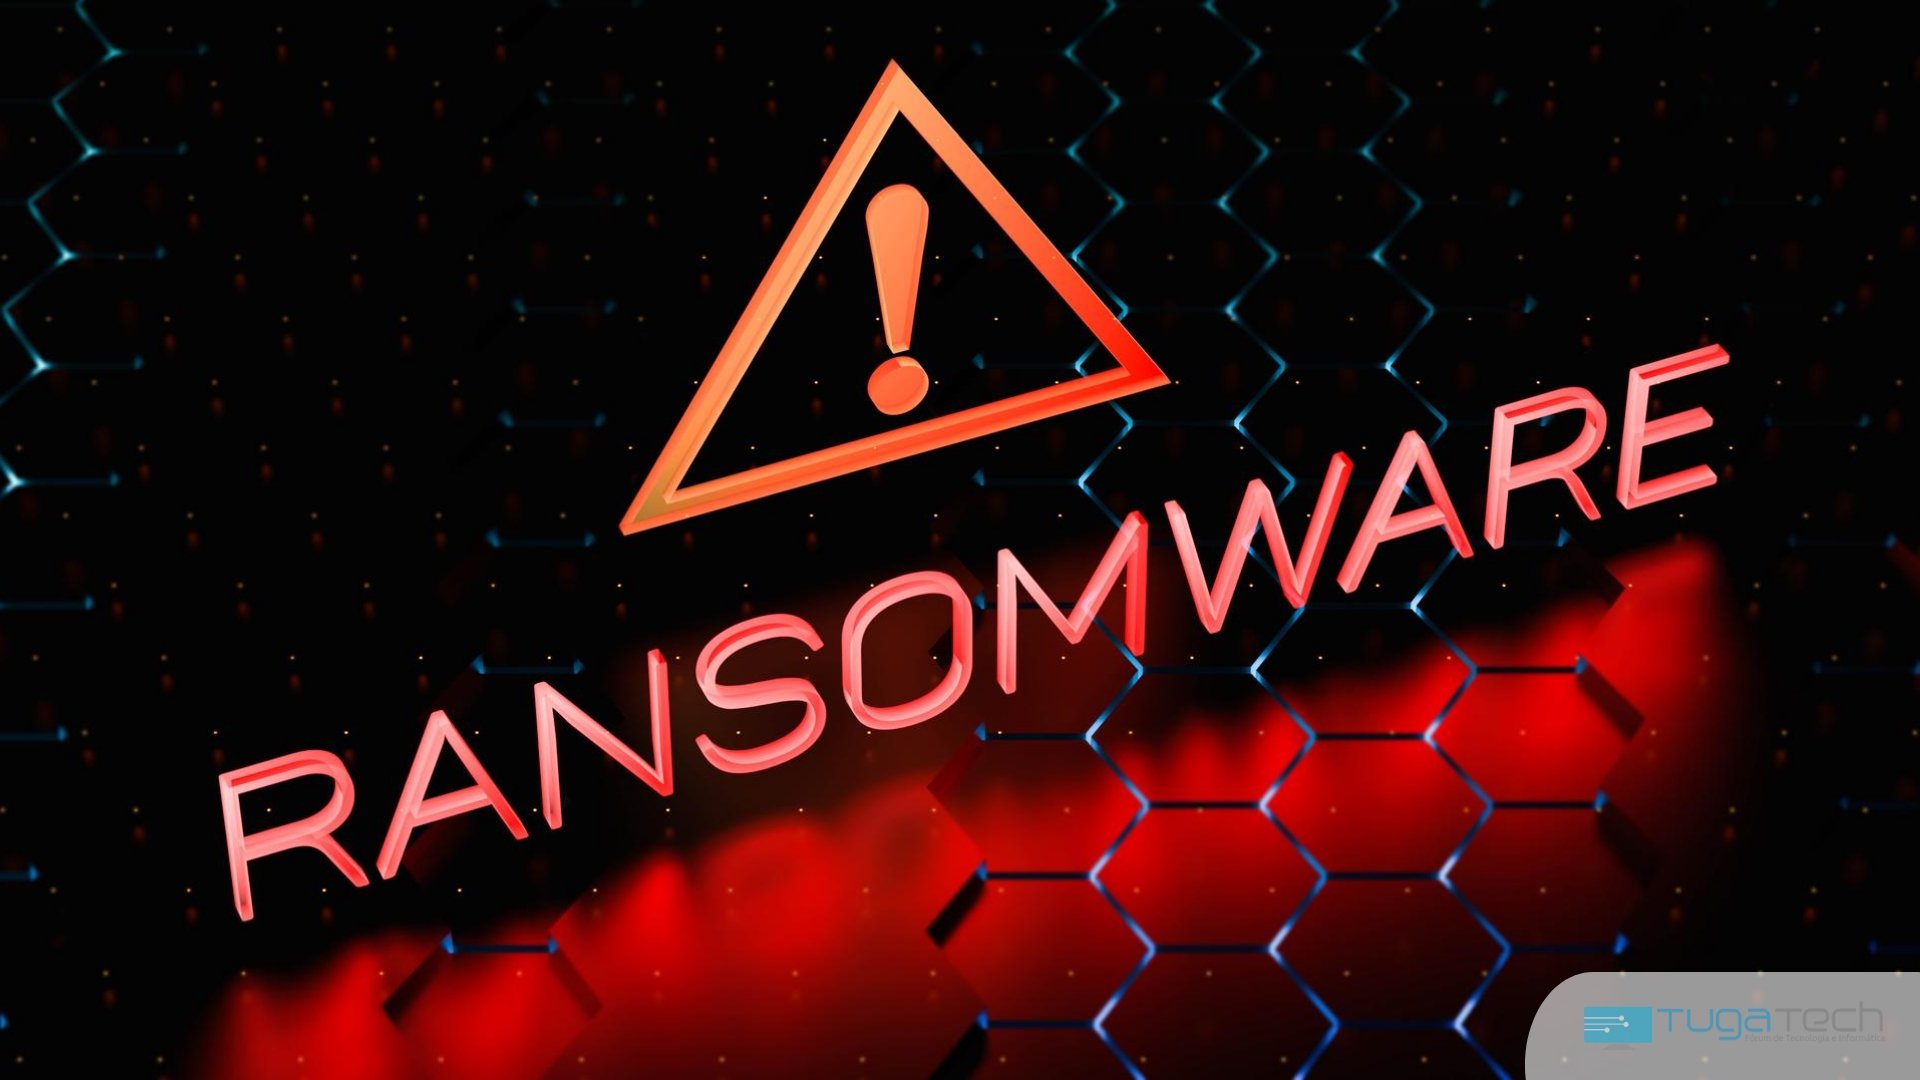 logo de ransomware em sistema